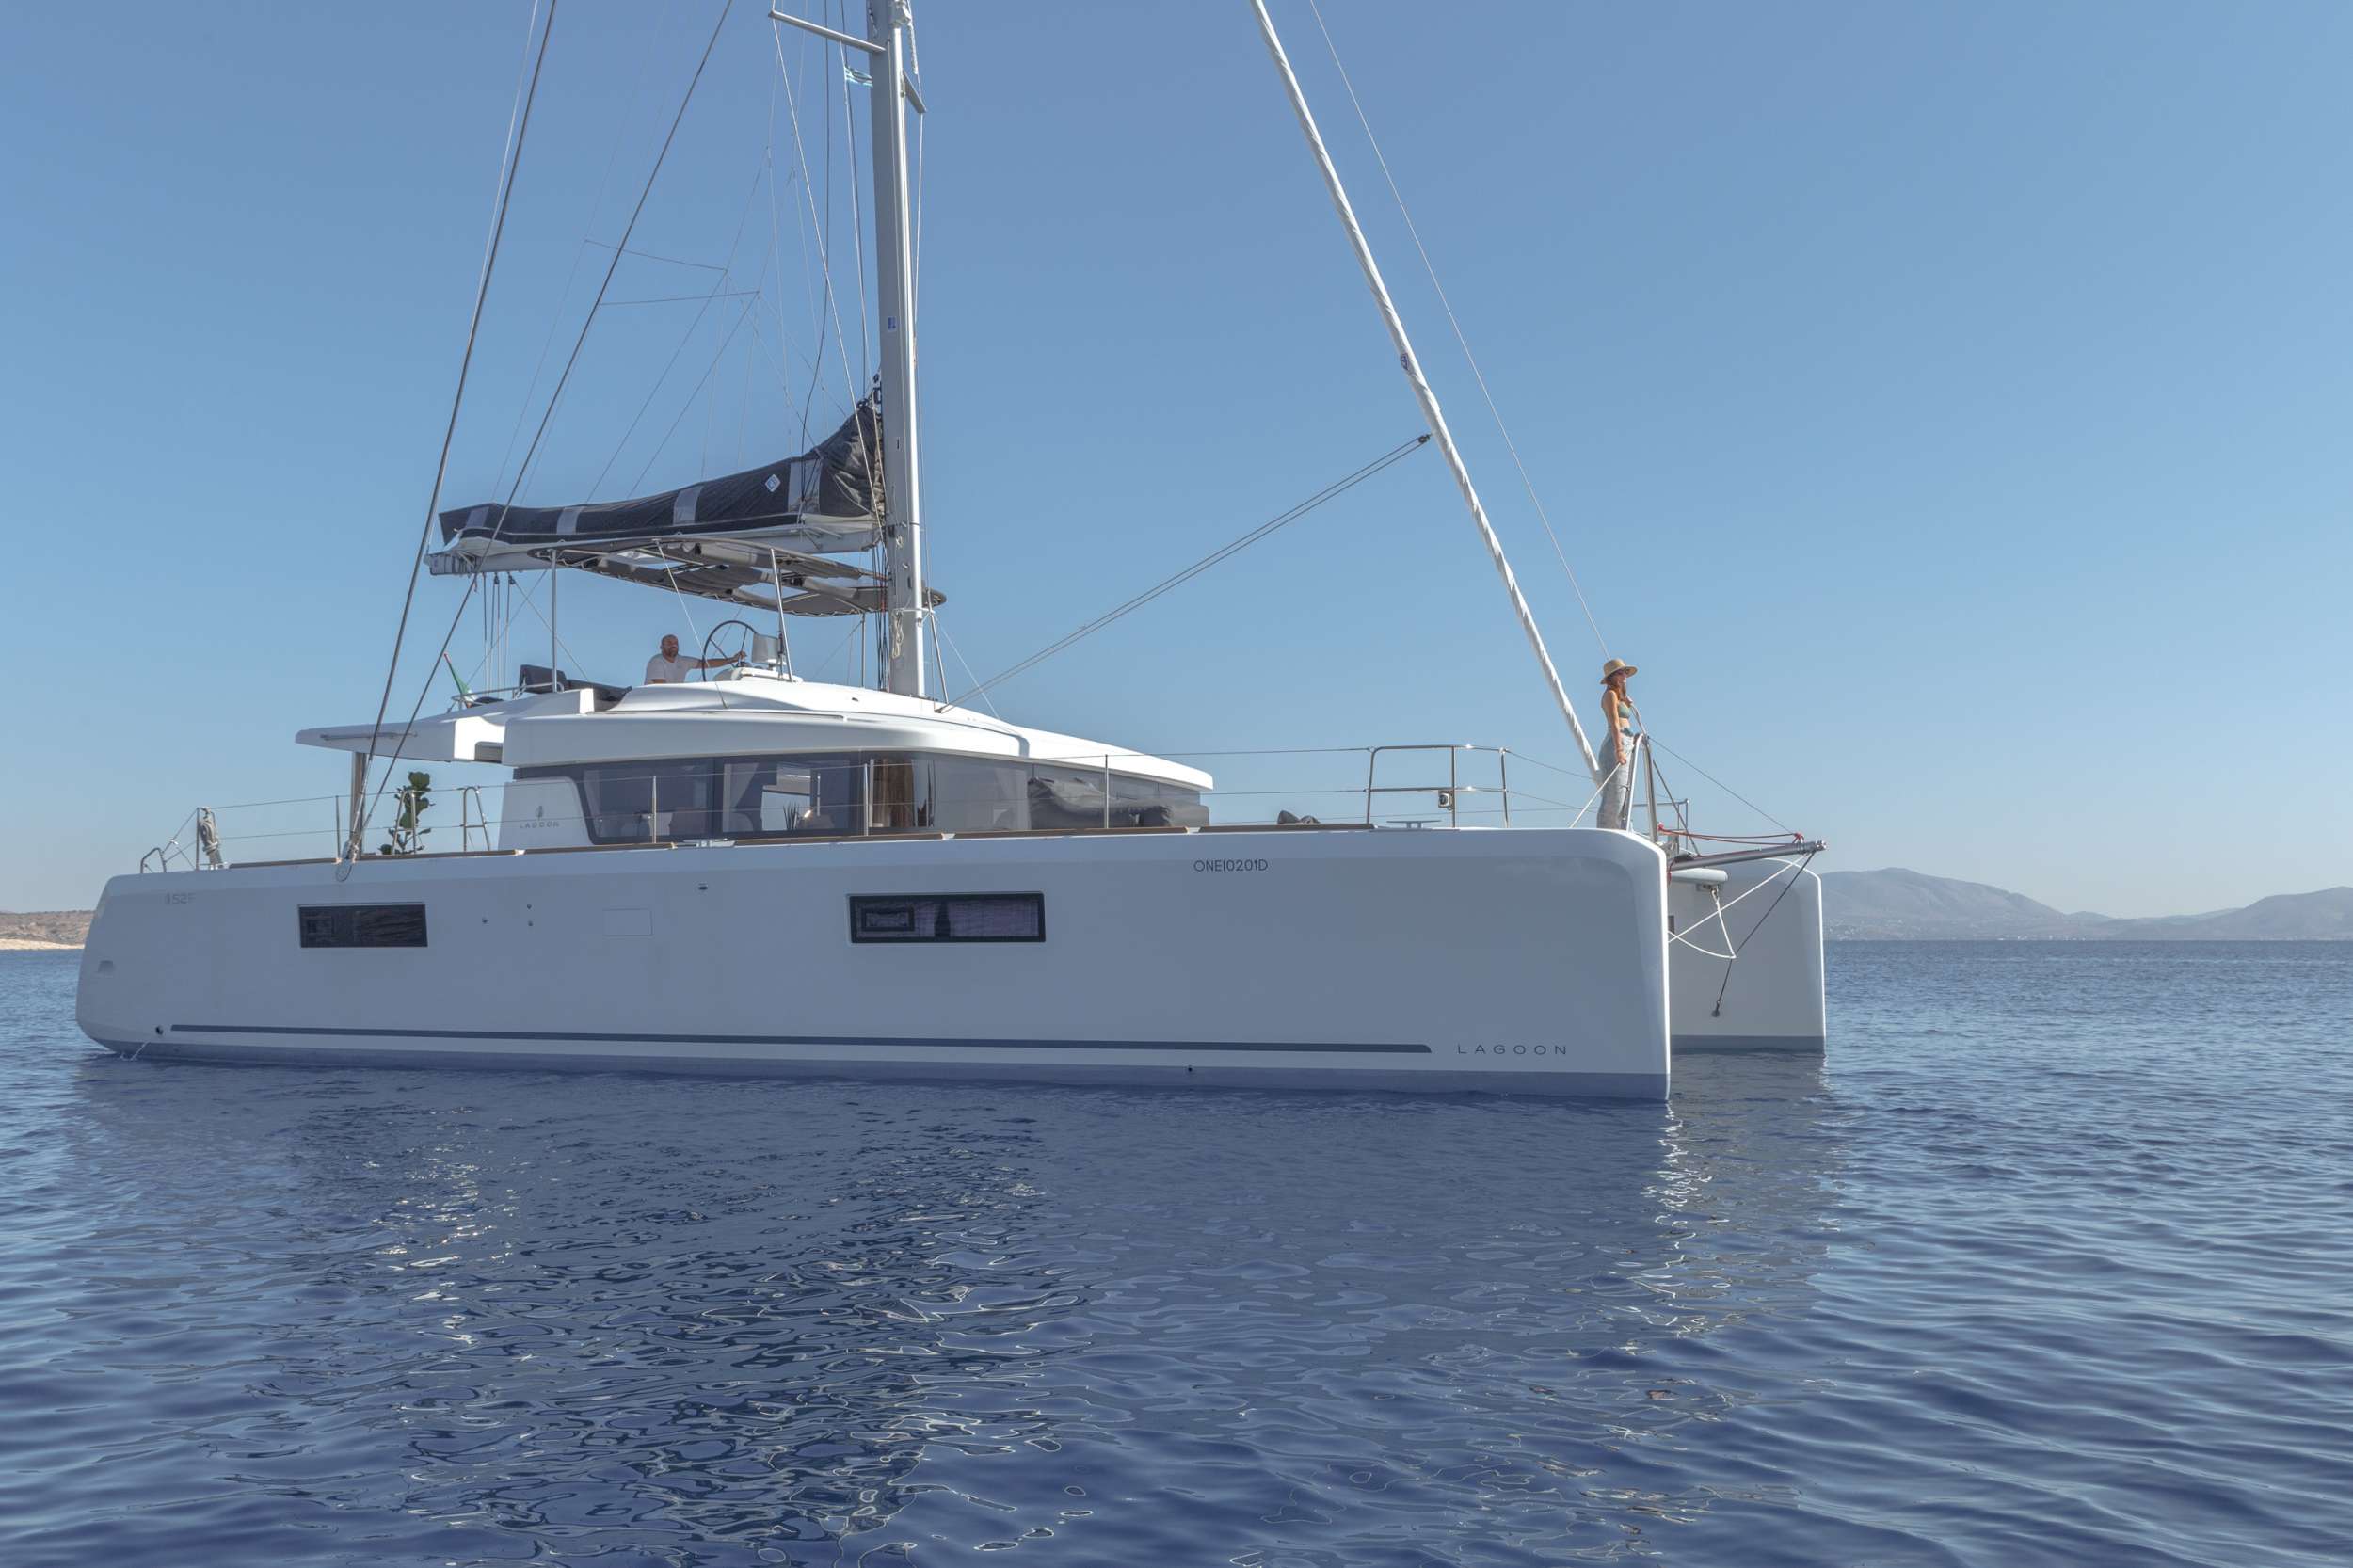 Oneida crewed Lagoon 52 catamaran charter sailing in Greece